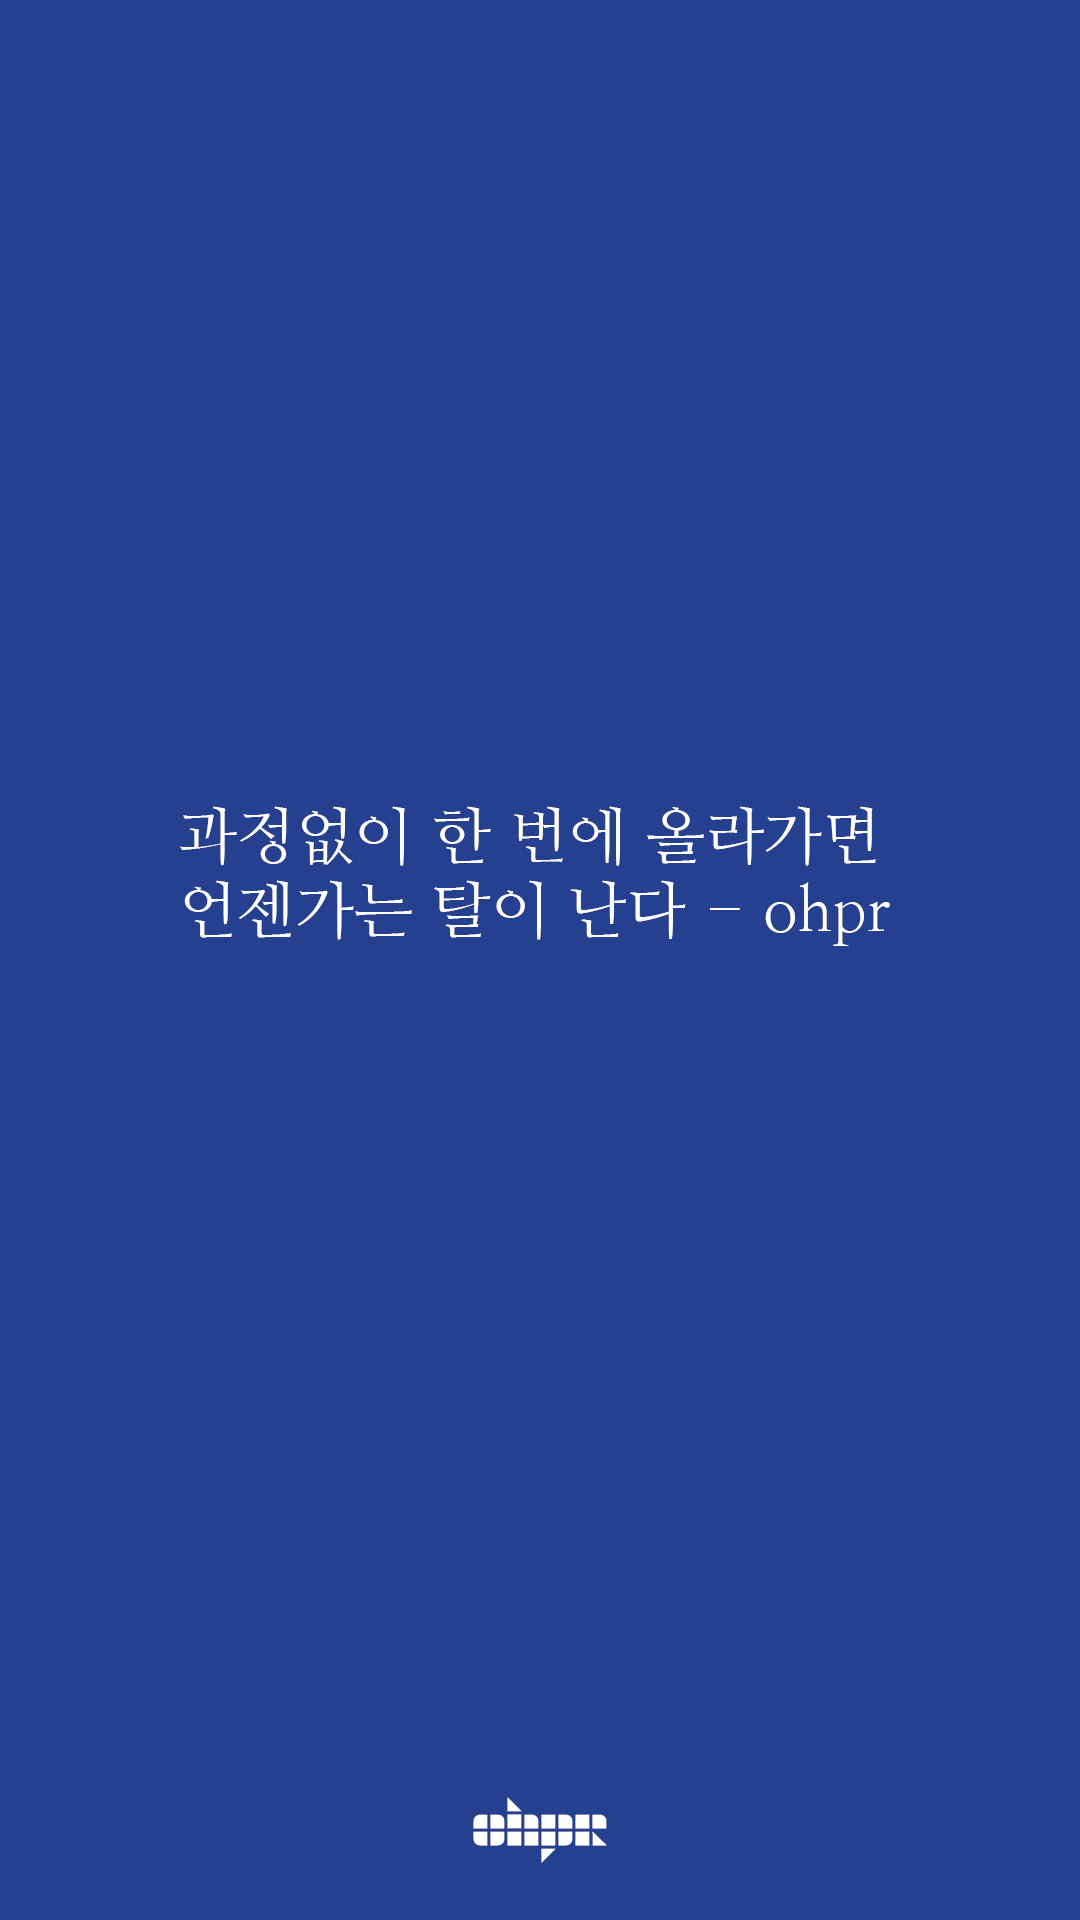 ohpr_wording5